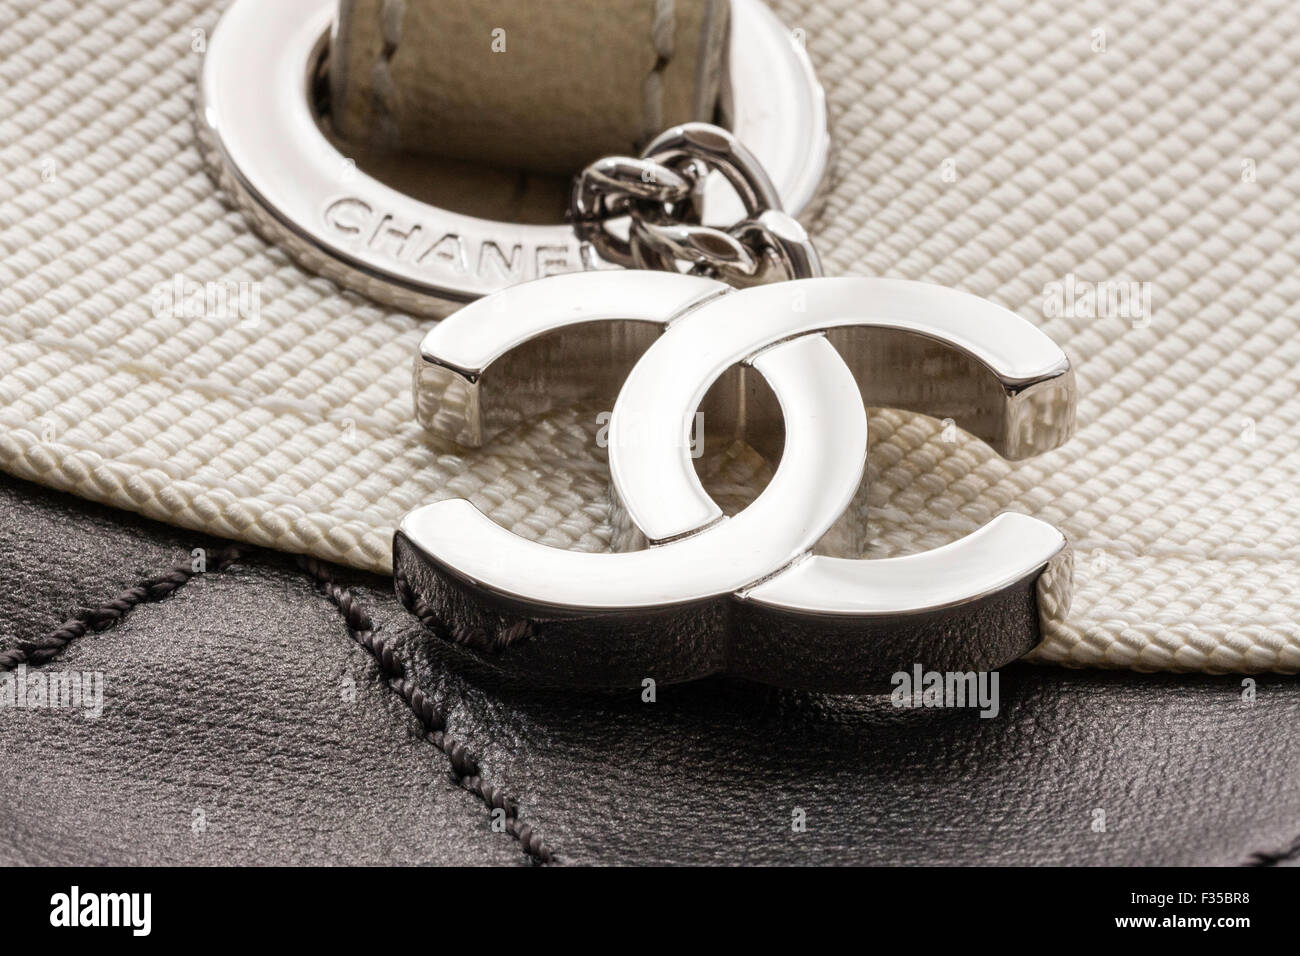 Close up of metal étiquette-nom sur une étiquette de nom de marque designer Chanel. Le logo CC interdépendants de Chanel attachés sur le côté du sac. Banque D'Images